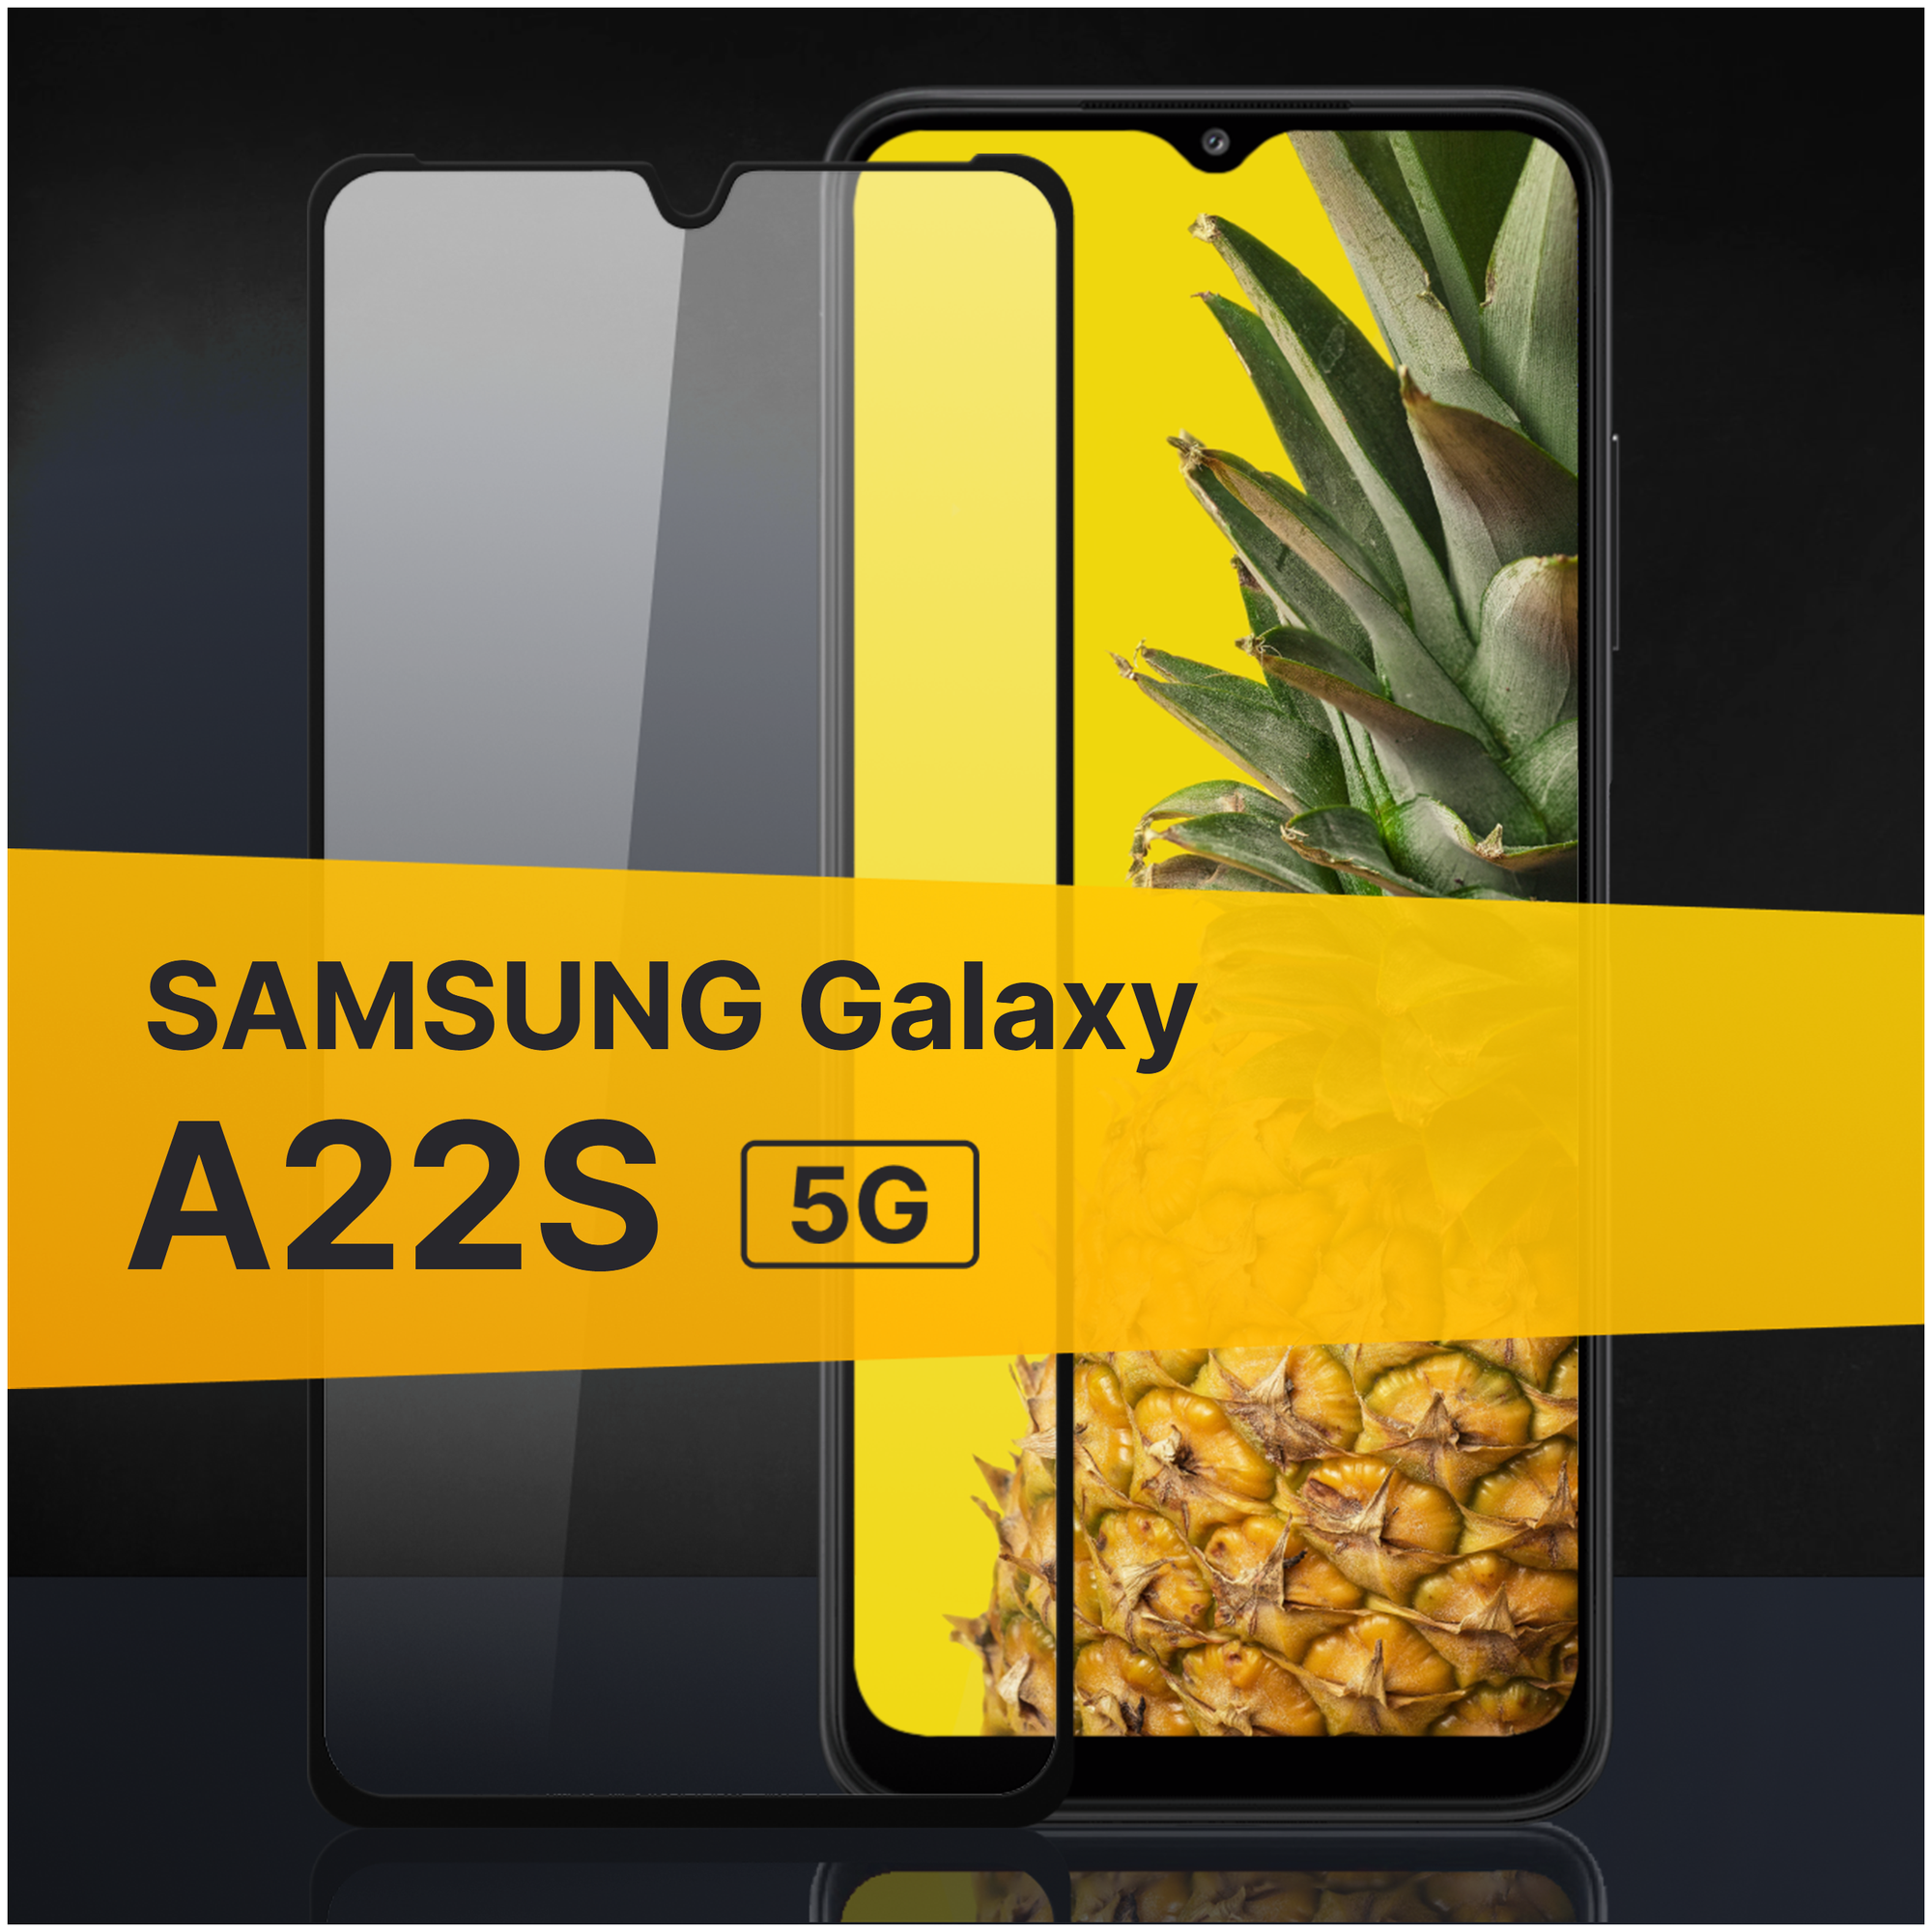 Противоударное защитное стекло для телефона Samsung Galaxy A22S 5G / Полноклеевое 3D стекло с олеофобным покрытием на смартфон Самсунг Галакси А22С 5Г / С черной рамкой